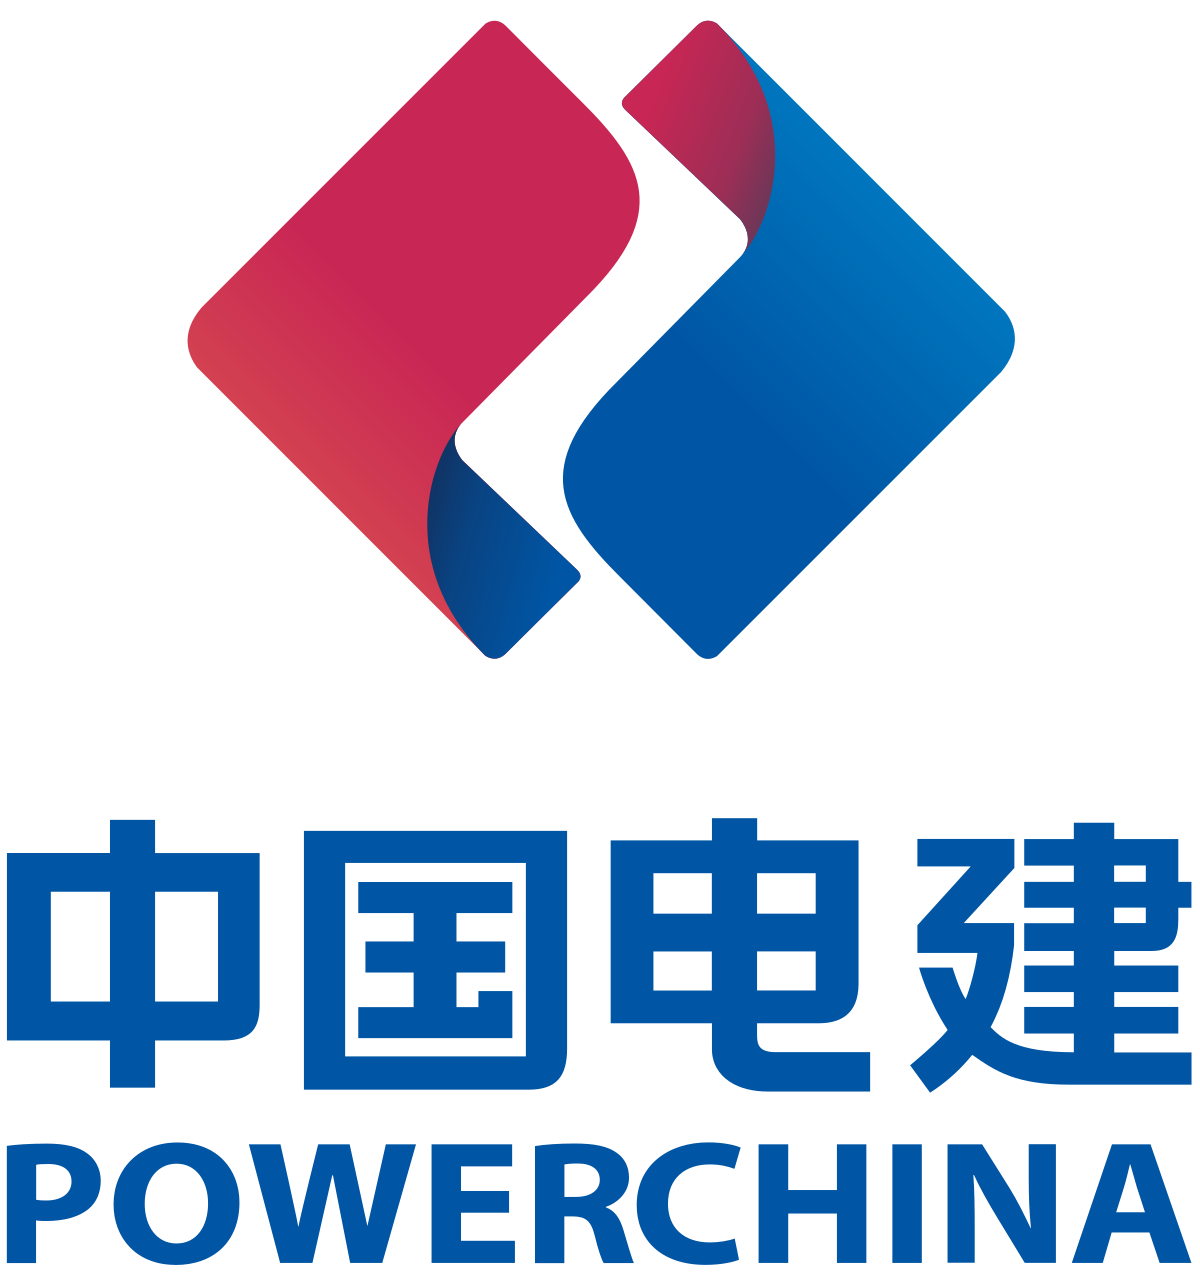 BY Powerchina Ltd.Co,